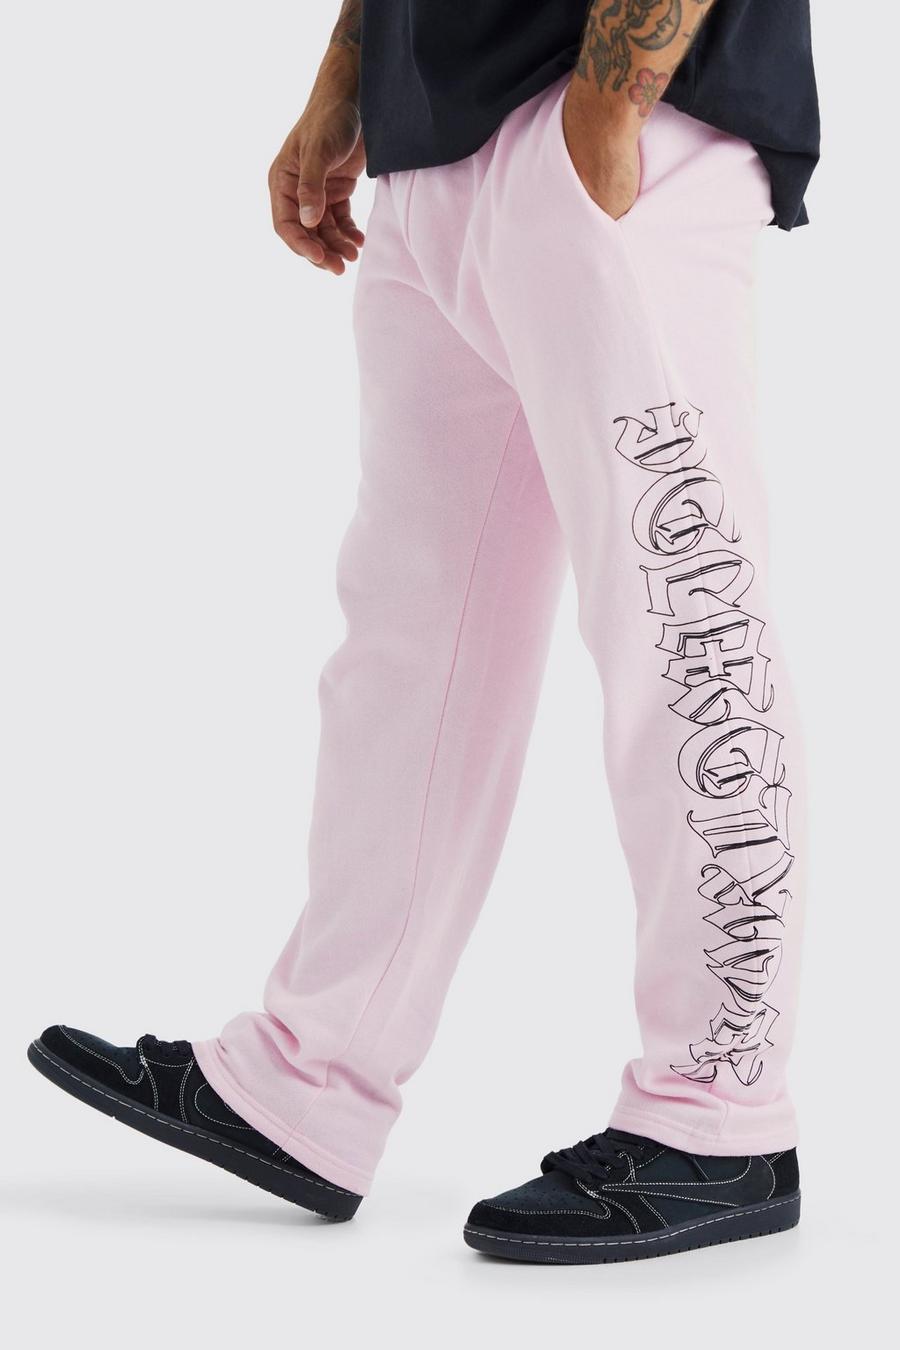 Pantaloni tuta dritti Worldwide, Pink